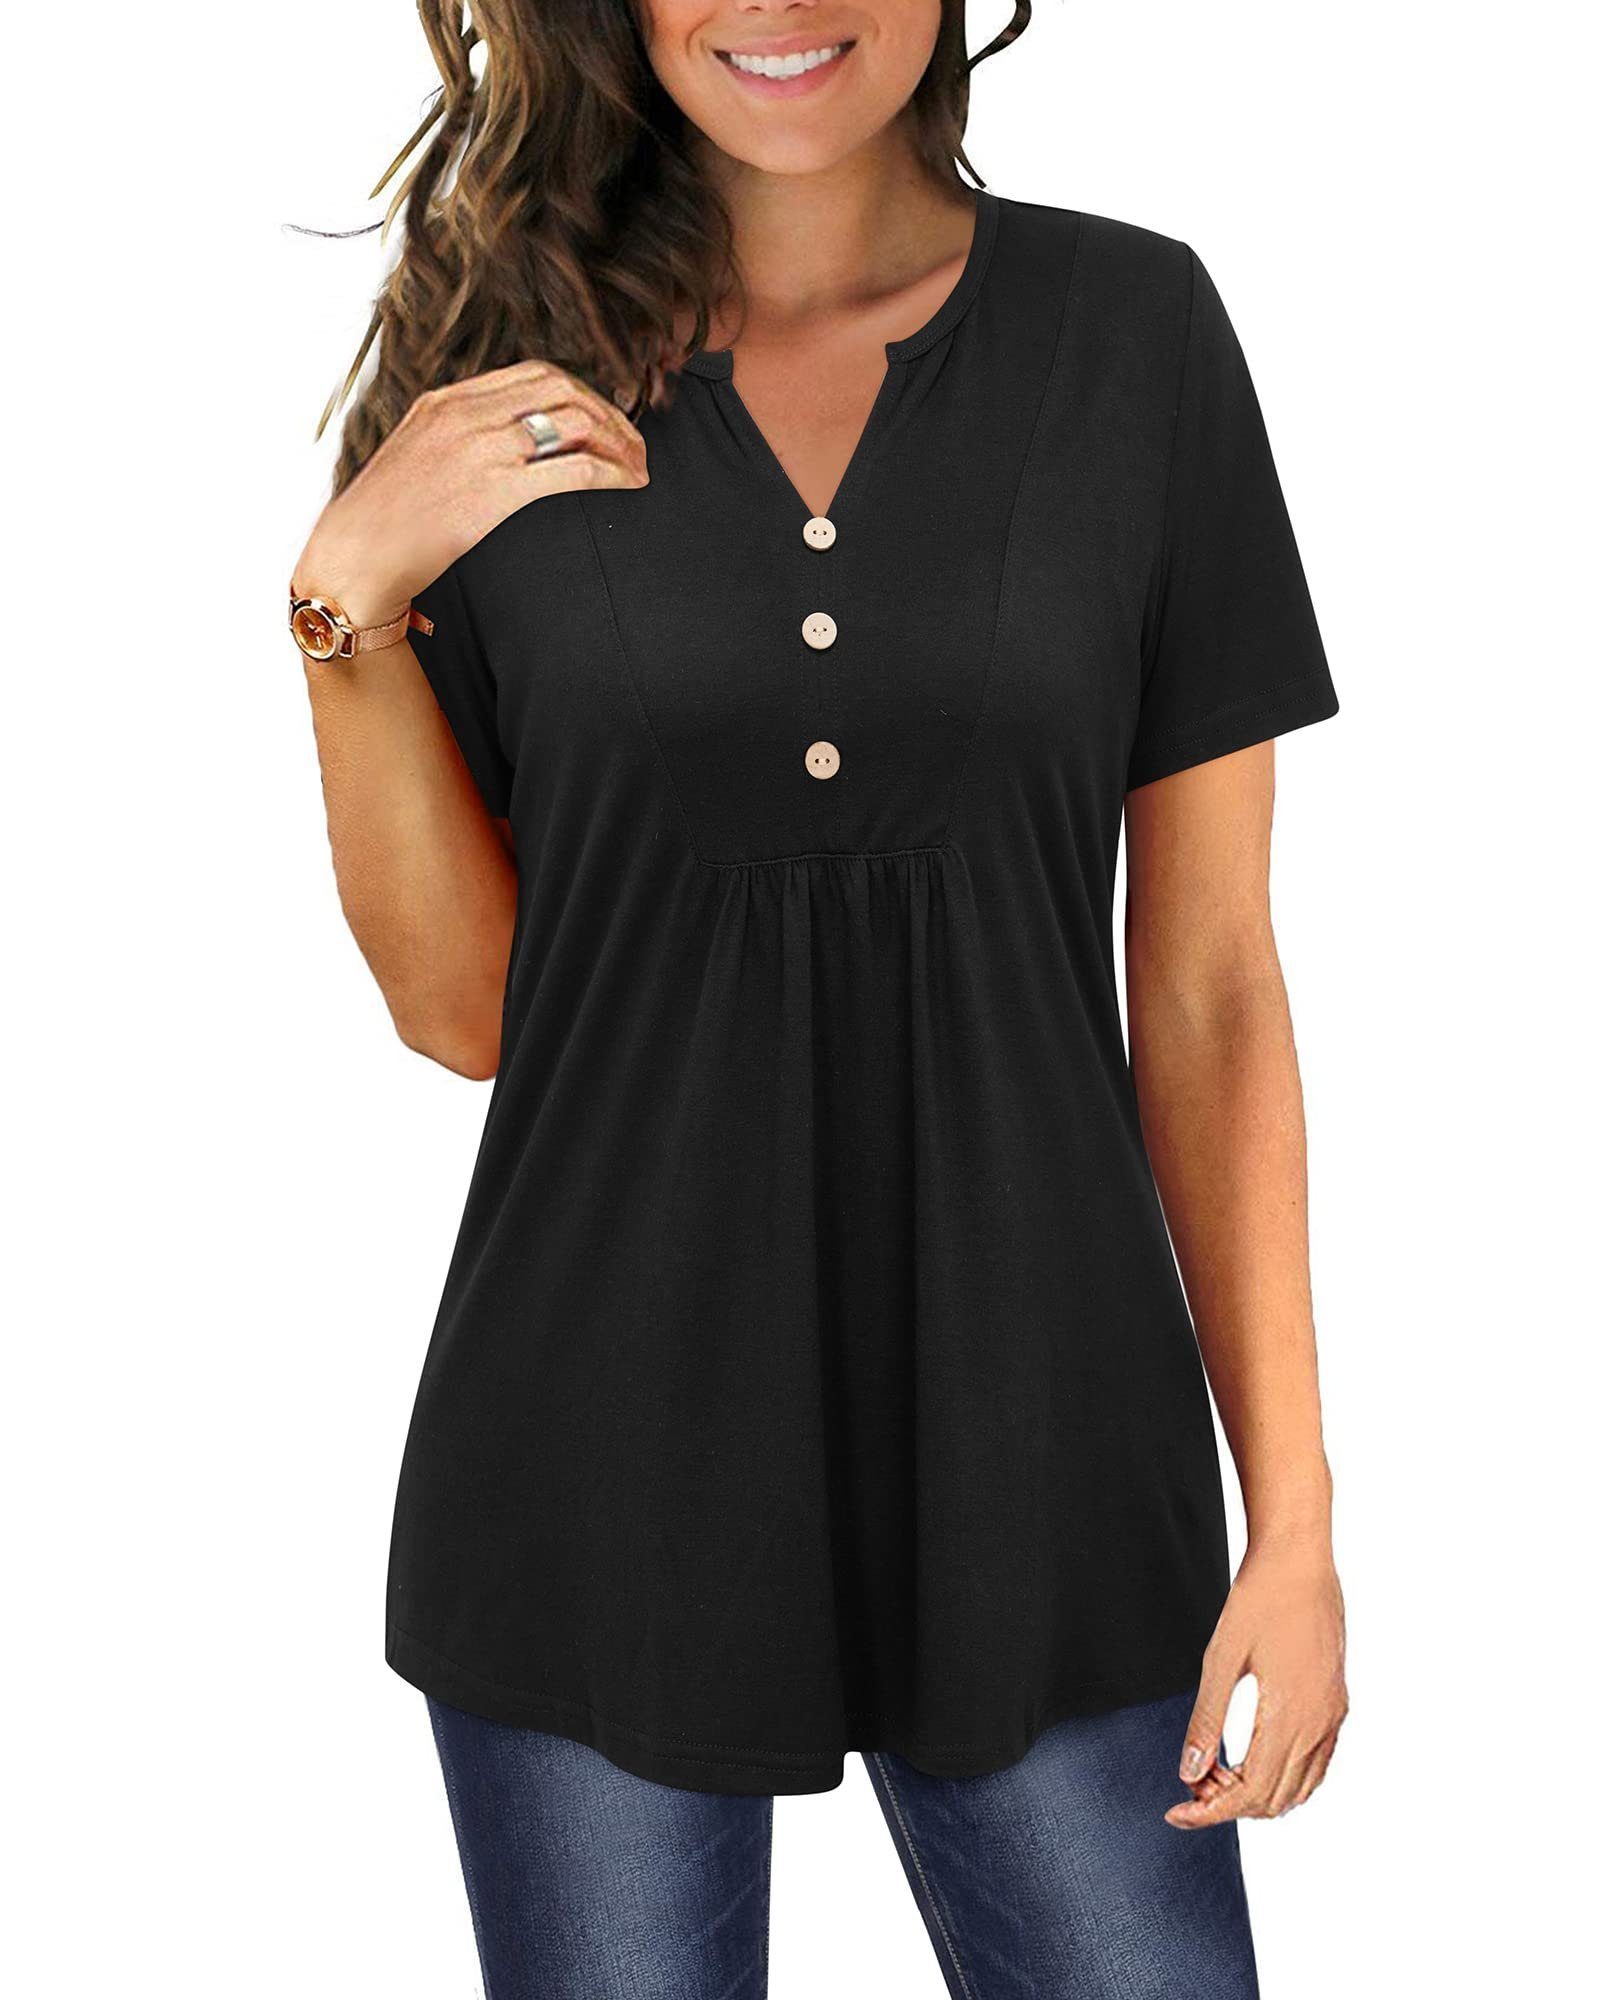 G4Free T-Shirt Shirt Damen Schwarz Ausschnitt V T shirts Kurzarm Plissiert Oberteile Tunika